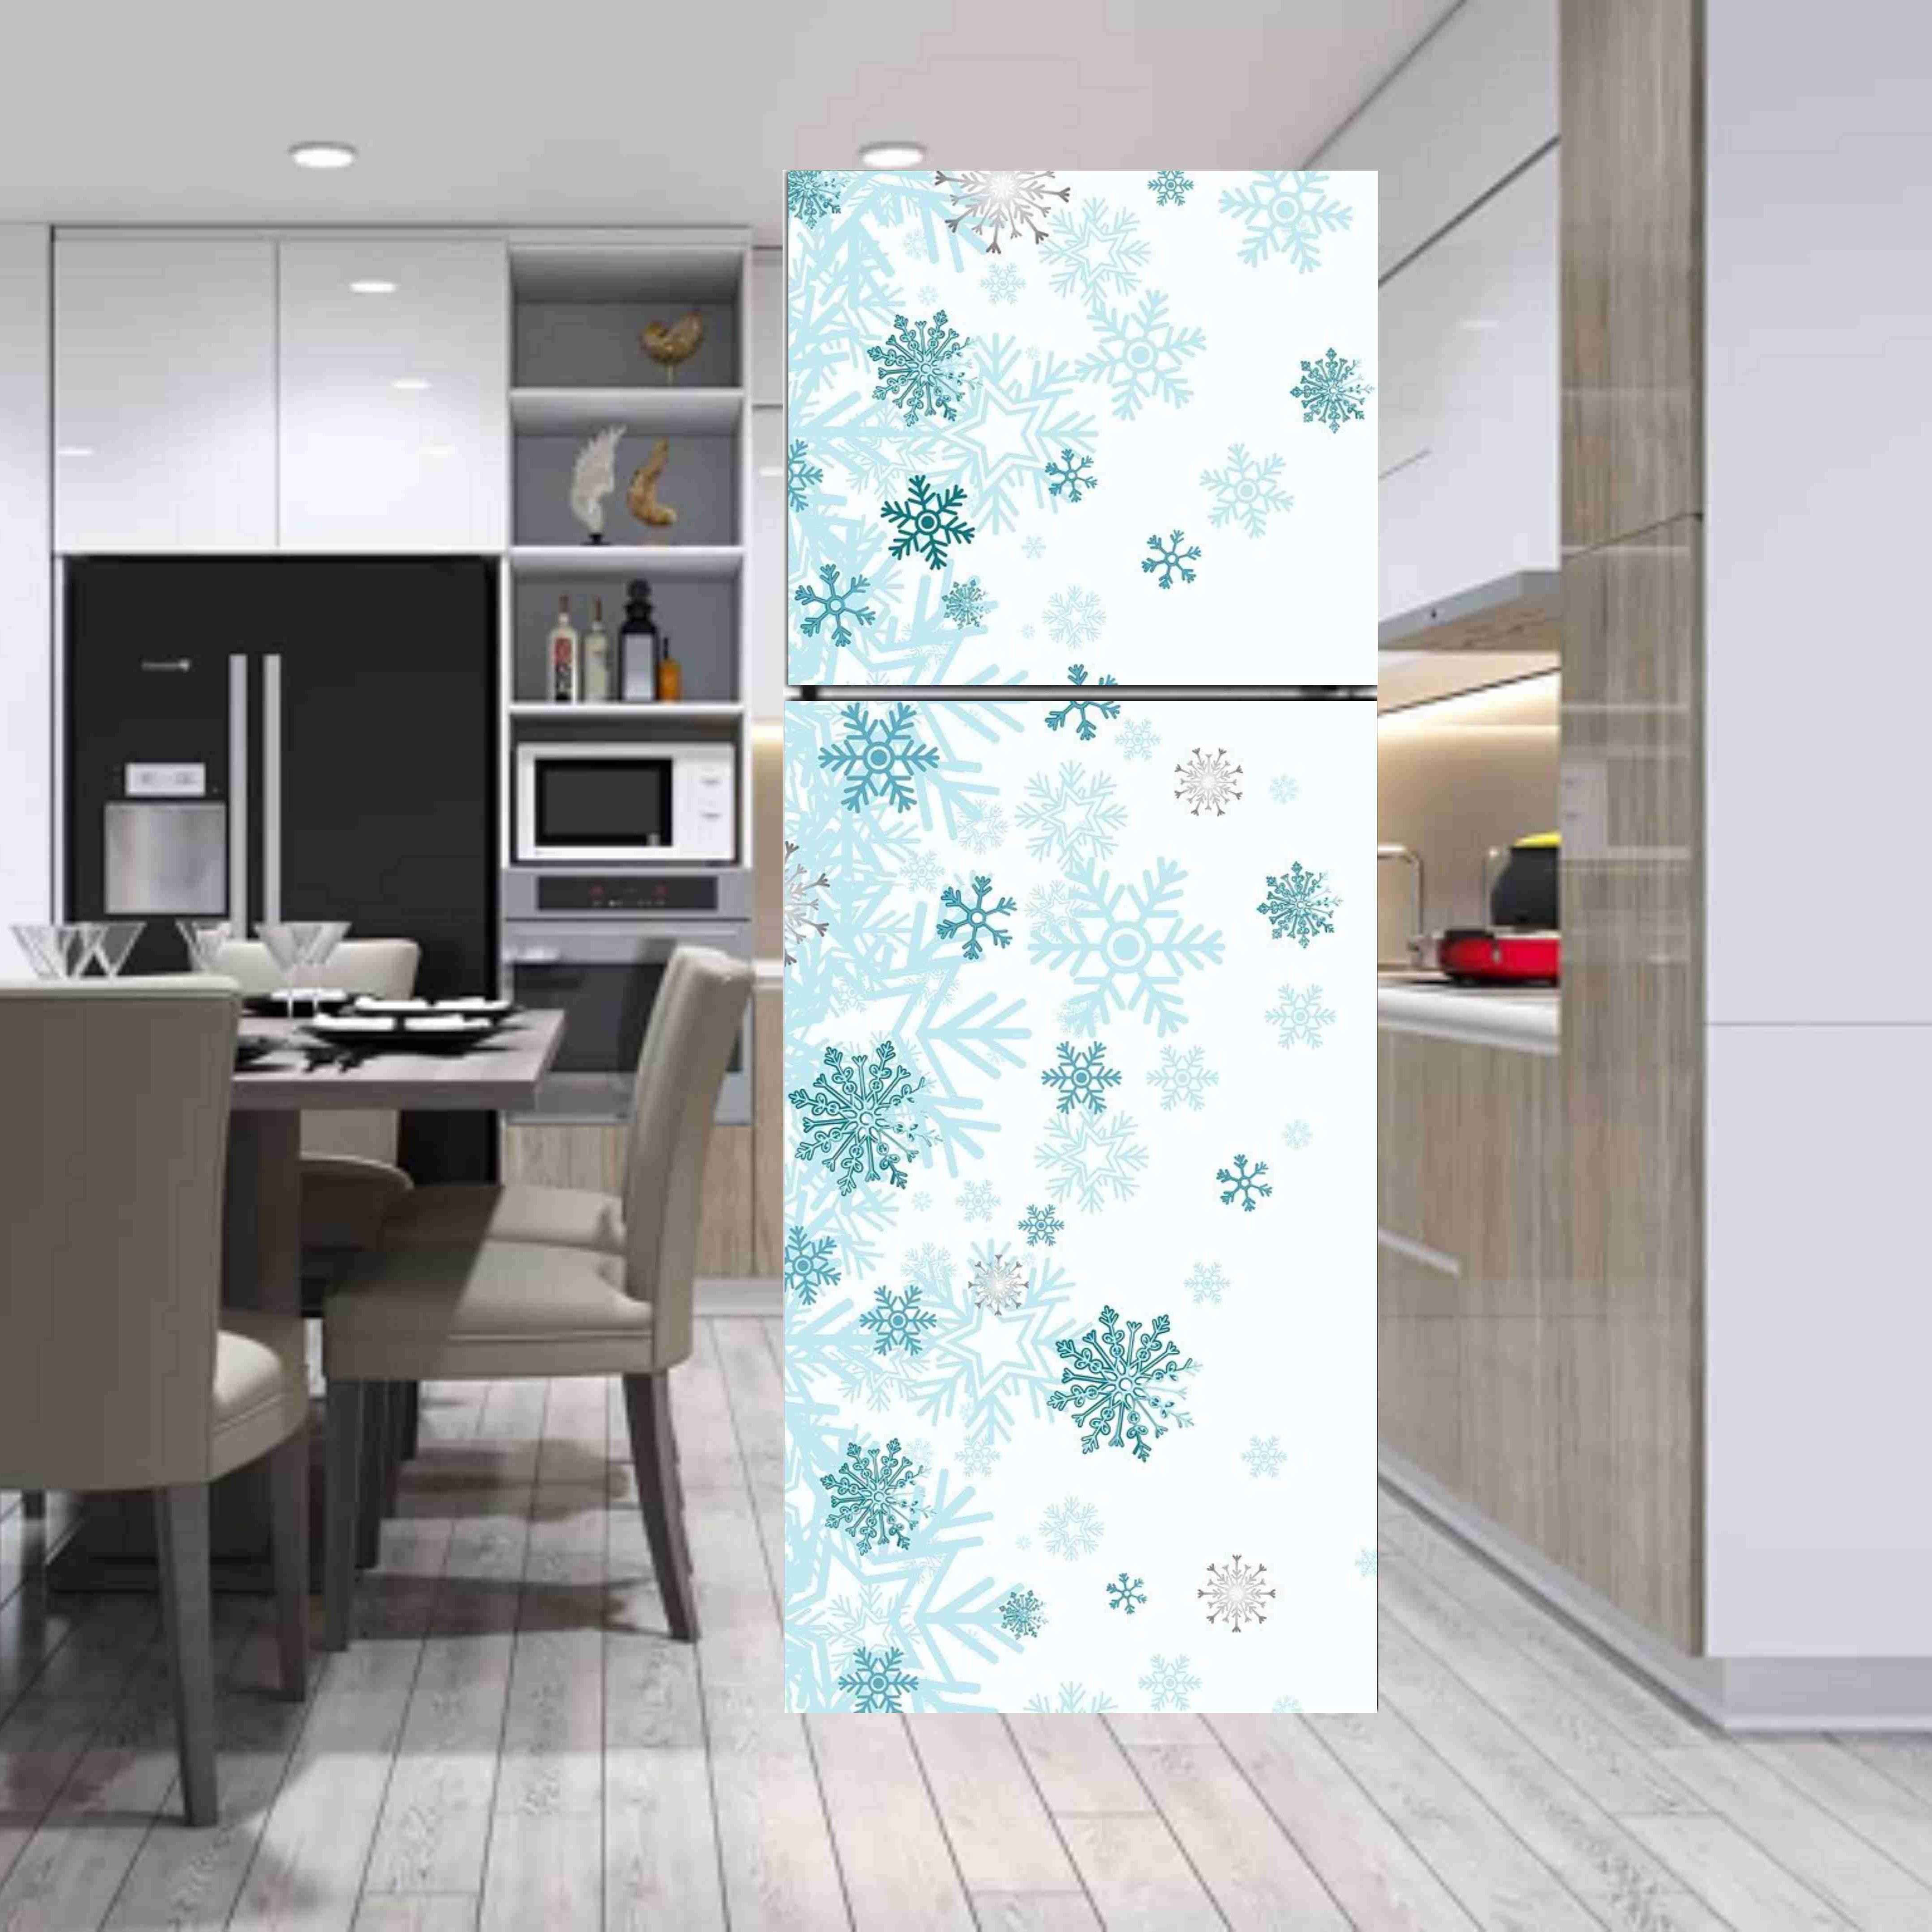 Miếng dán trang trí tủ lạnh họa tiết bông tuyết chất liệu decal cao cấp